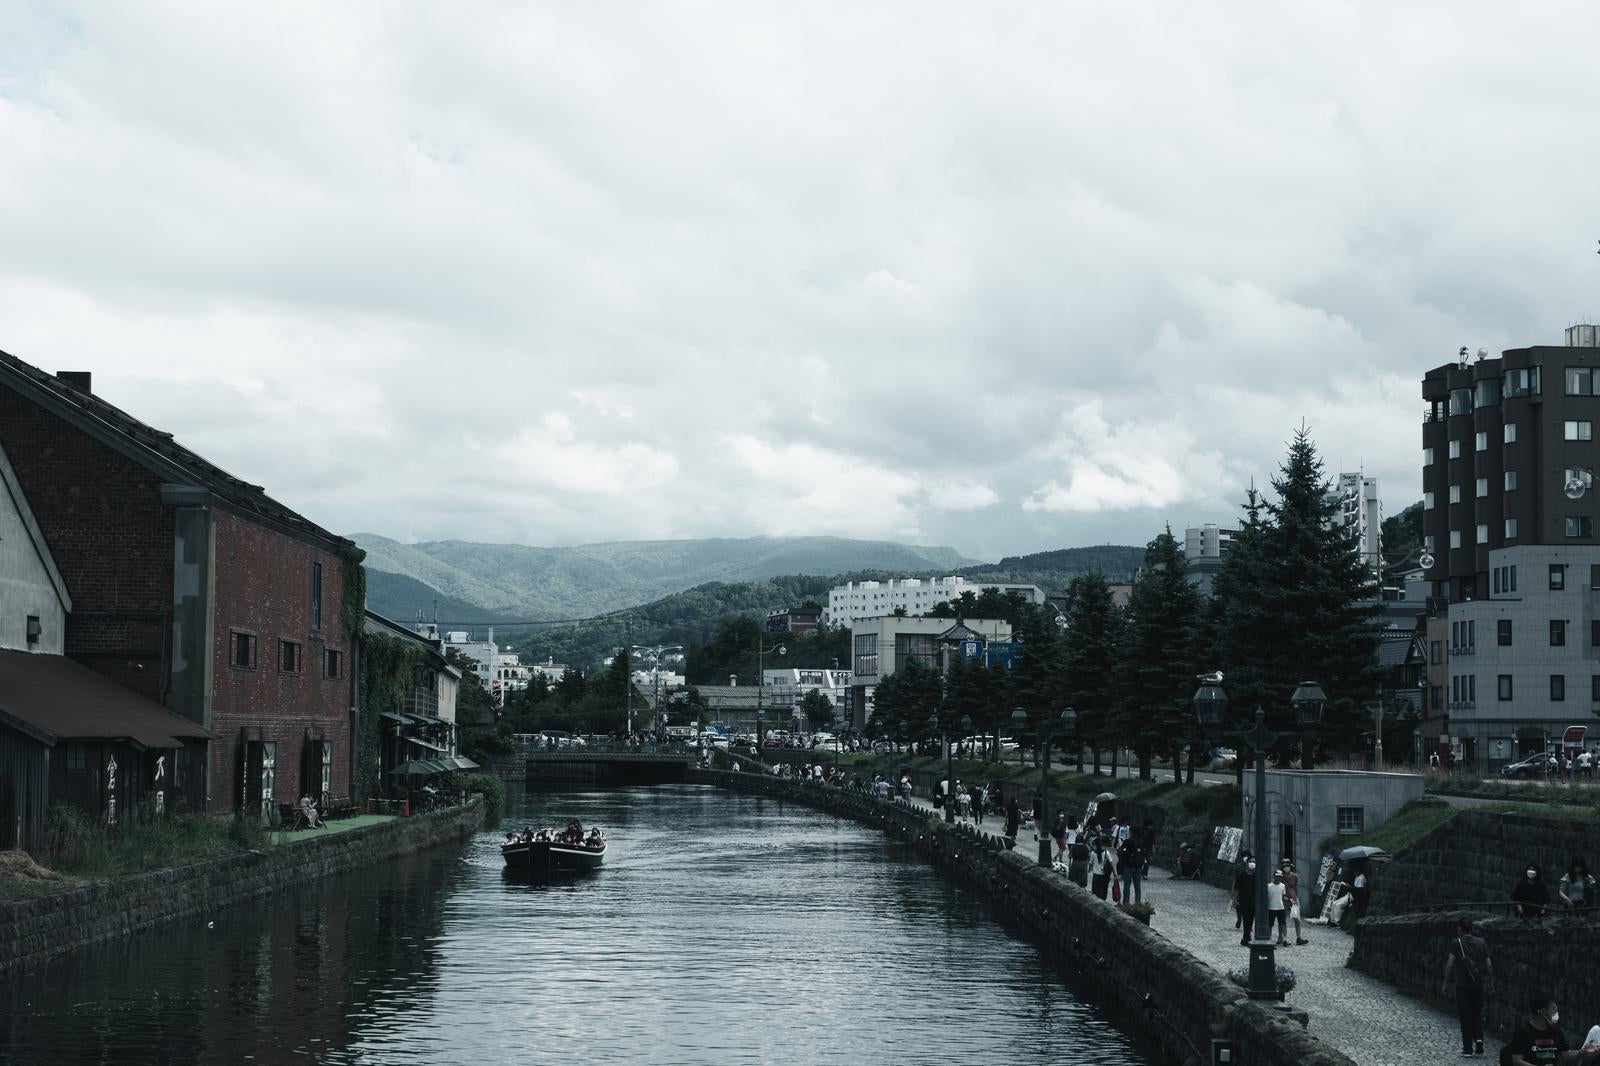 「小樽運河 風景と文化の融合」の写真